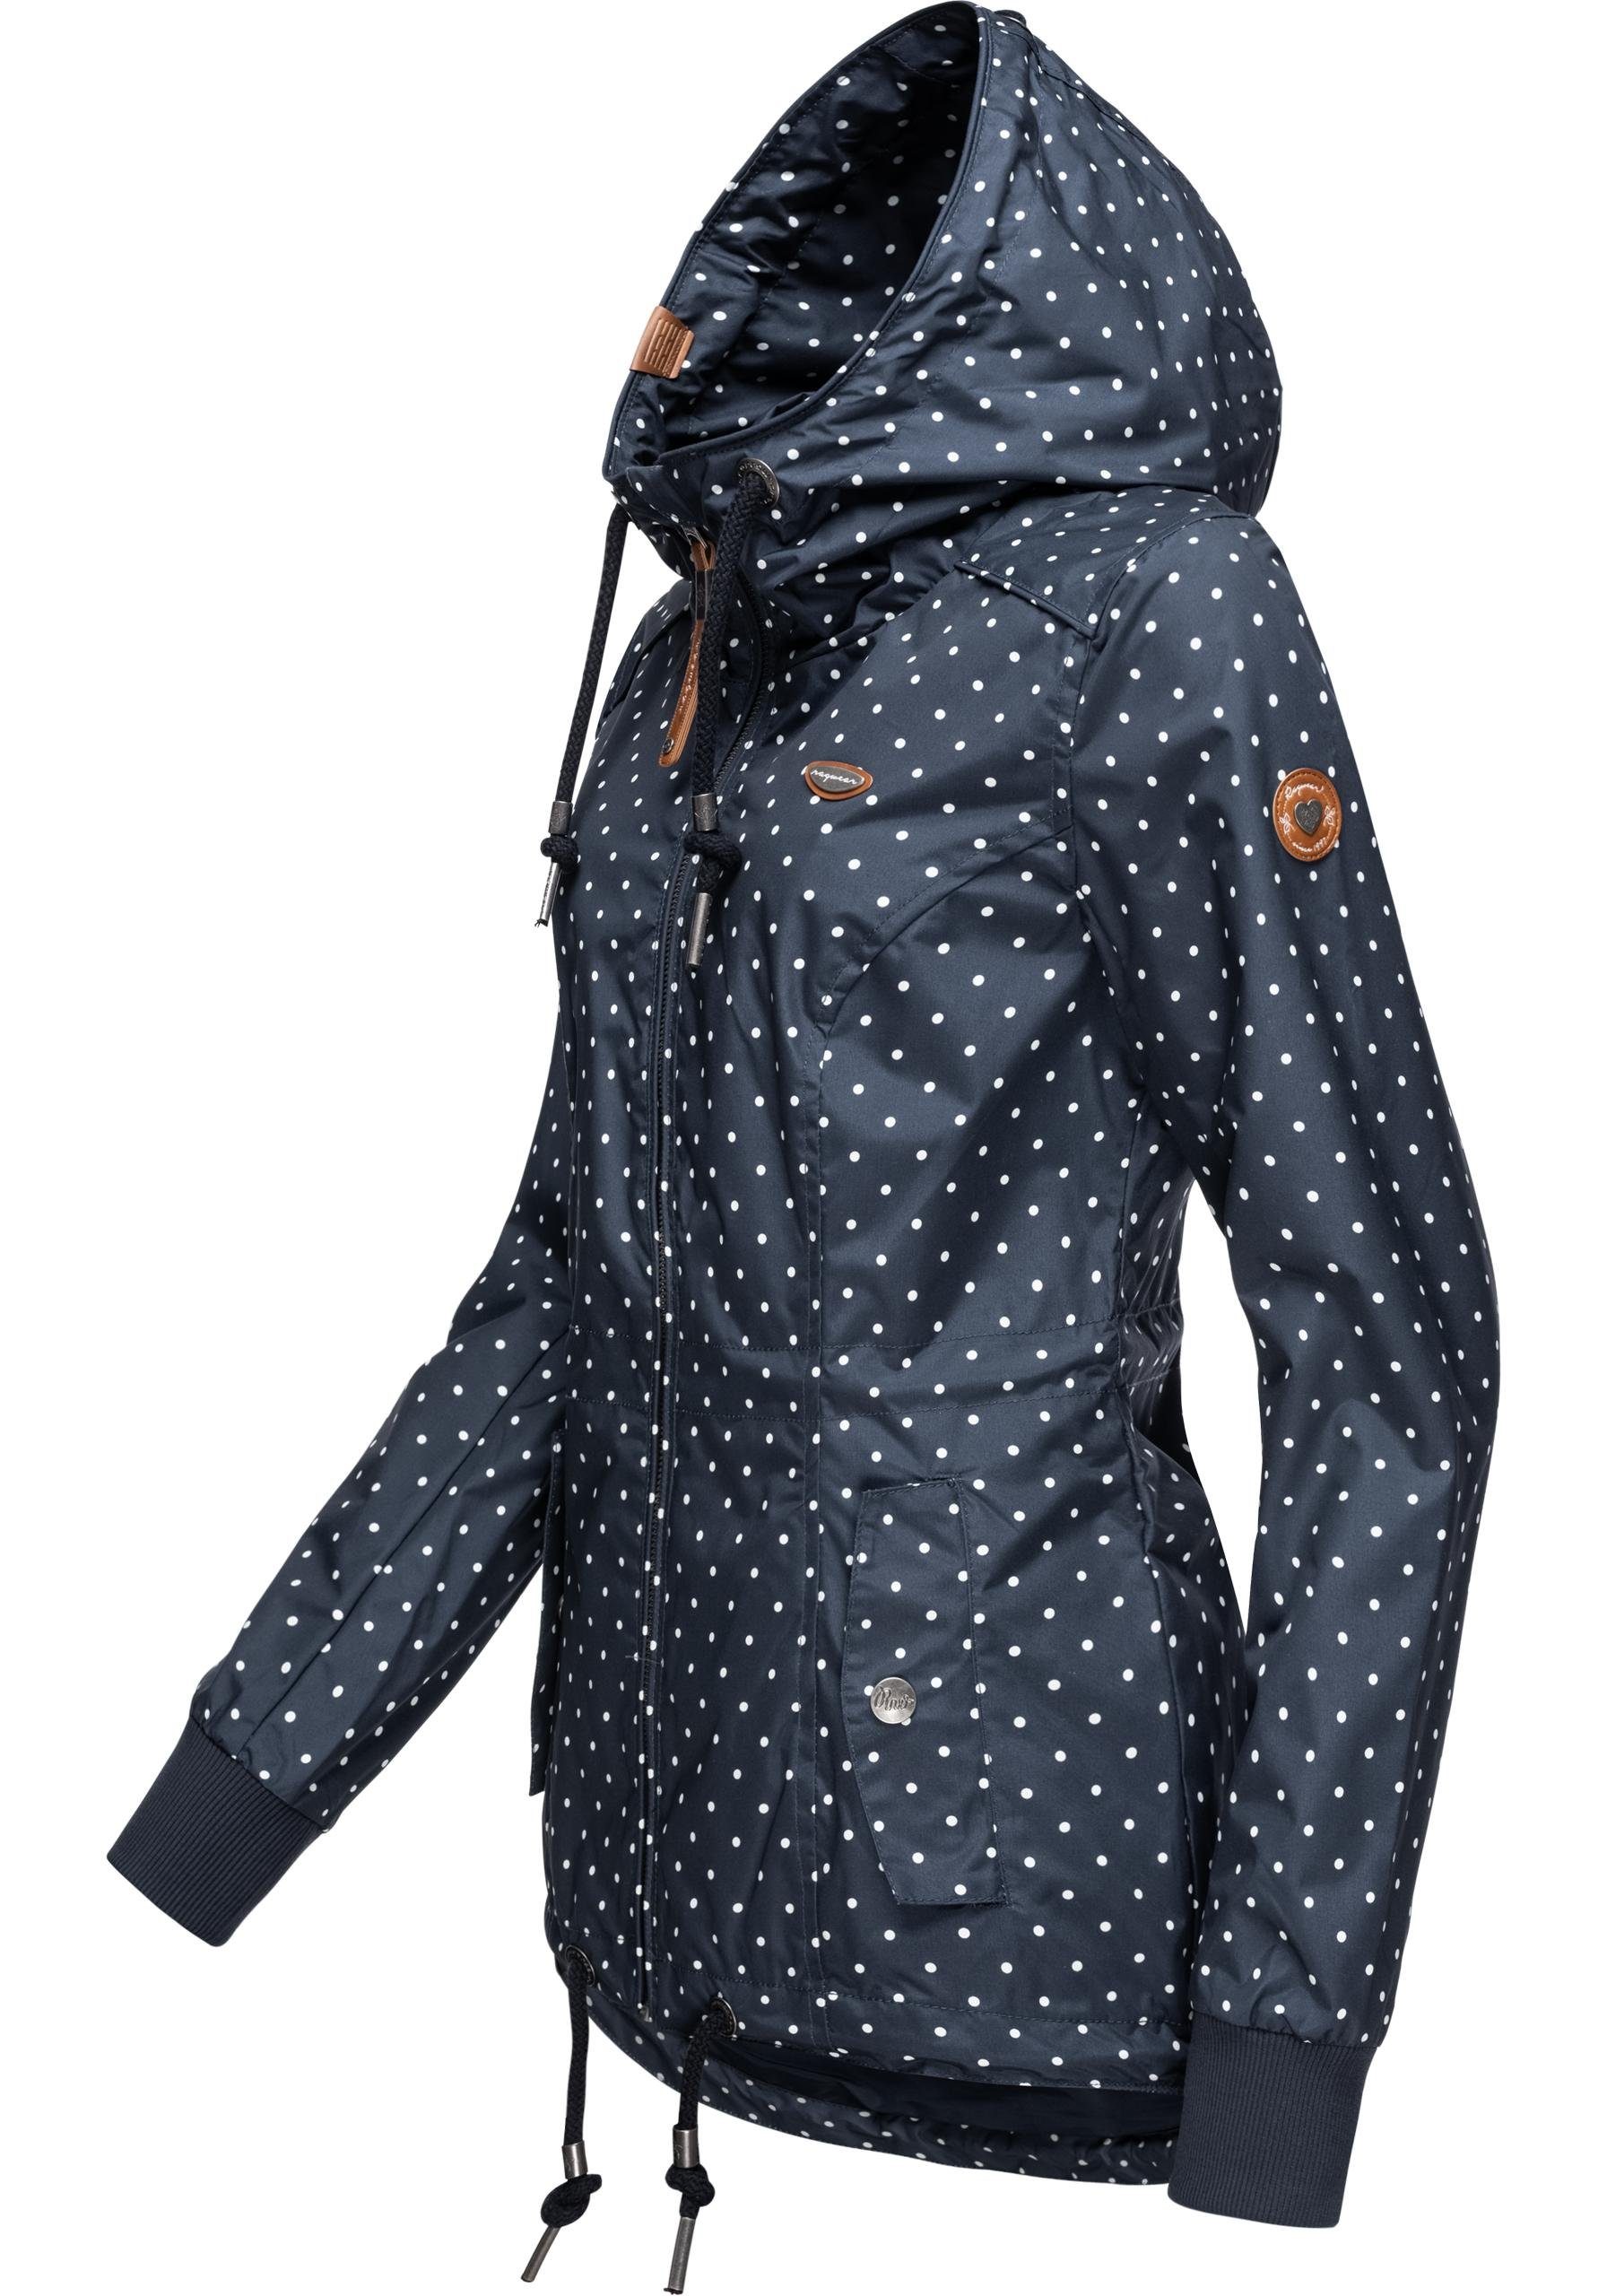 Ragwear Outdoorjacke Danka Dots stylische Übergangsjacke mit großer Kapuze,  Jacke für die Übergangszeit (Frühling, Herbst)